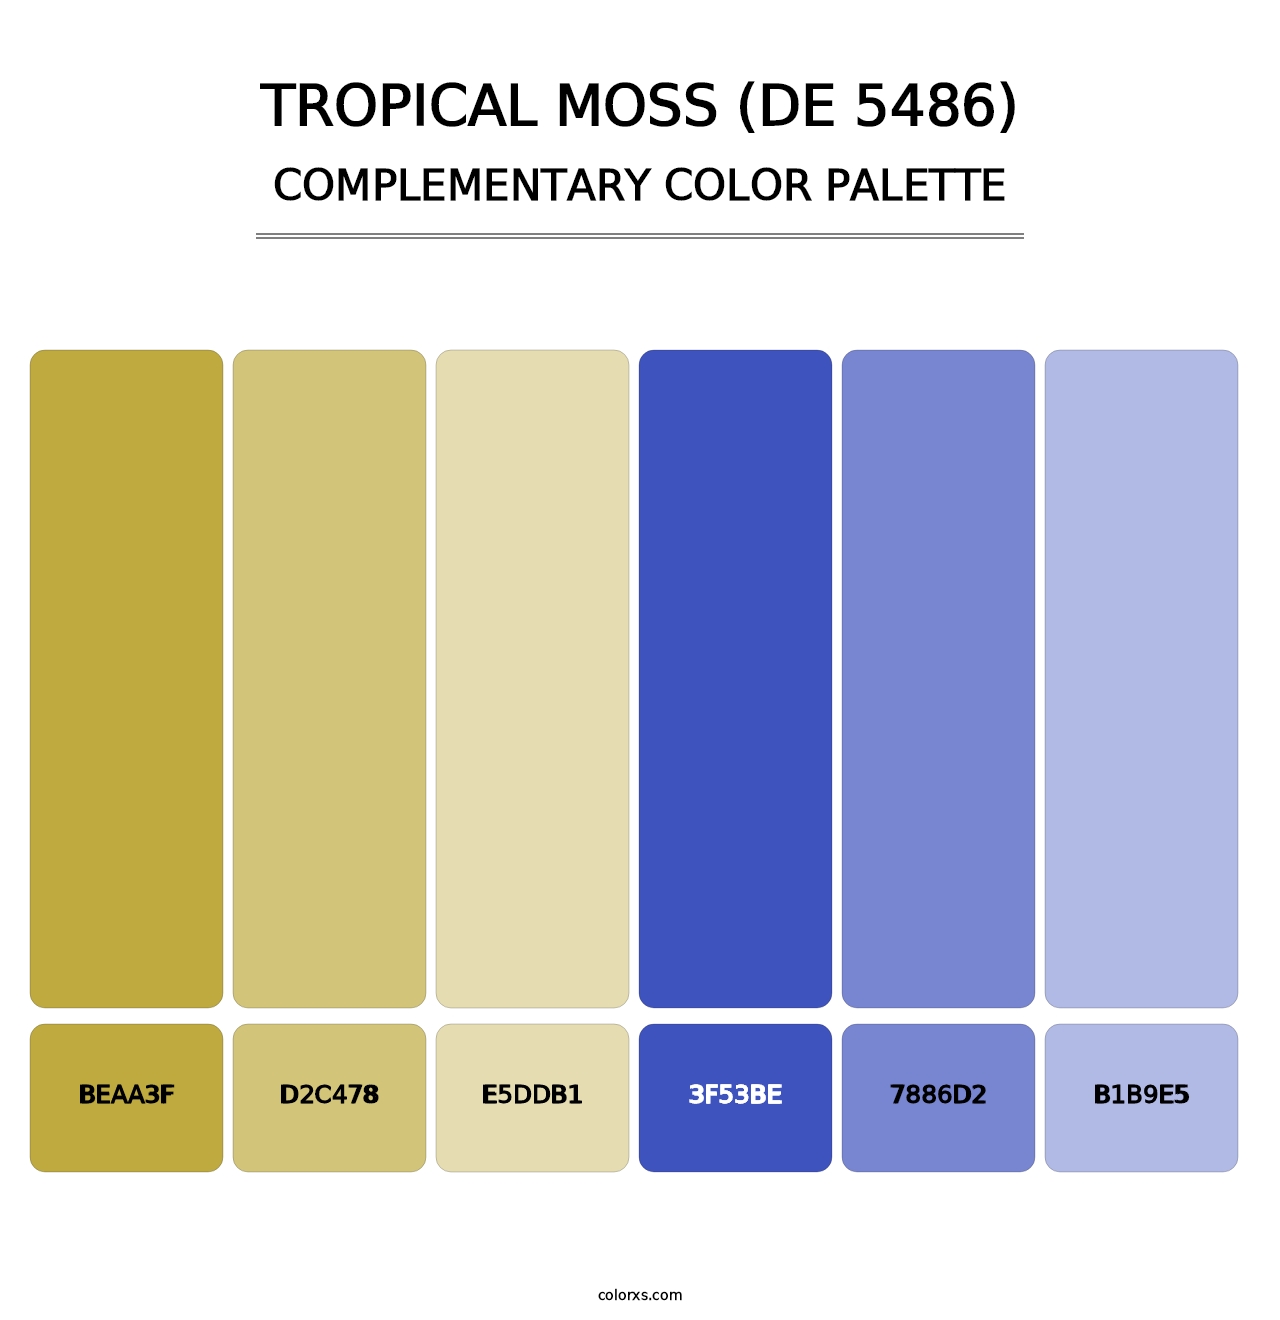 Tropical Moss (DE 5486) - Complementary Color Palette